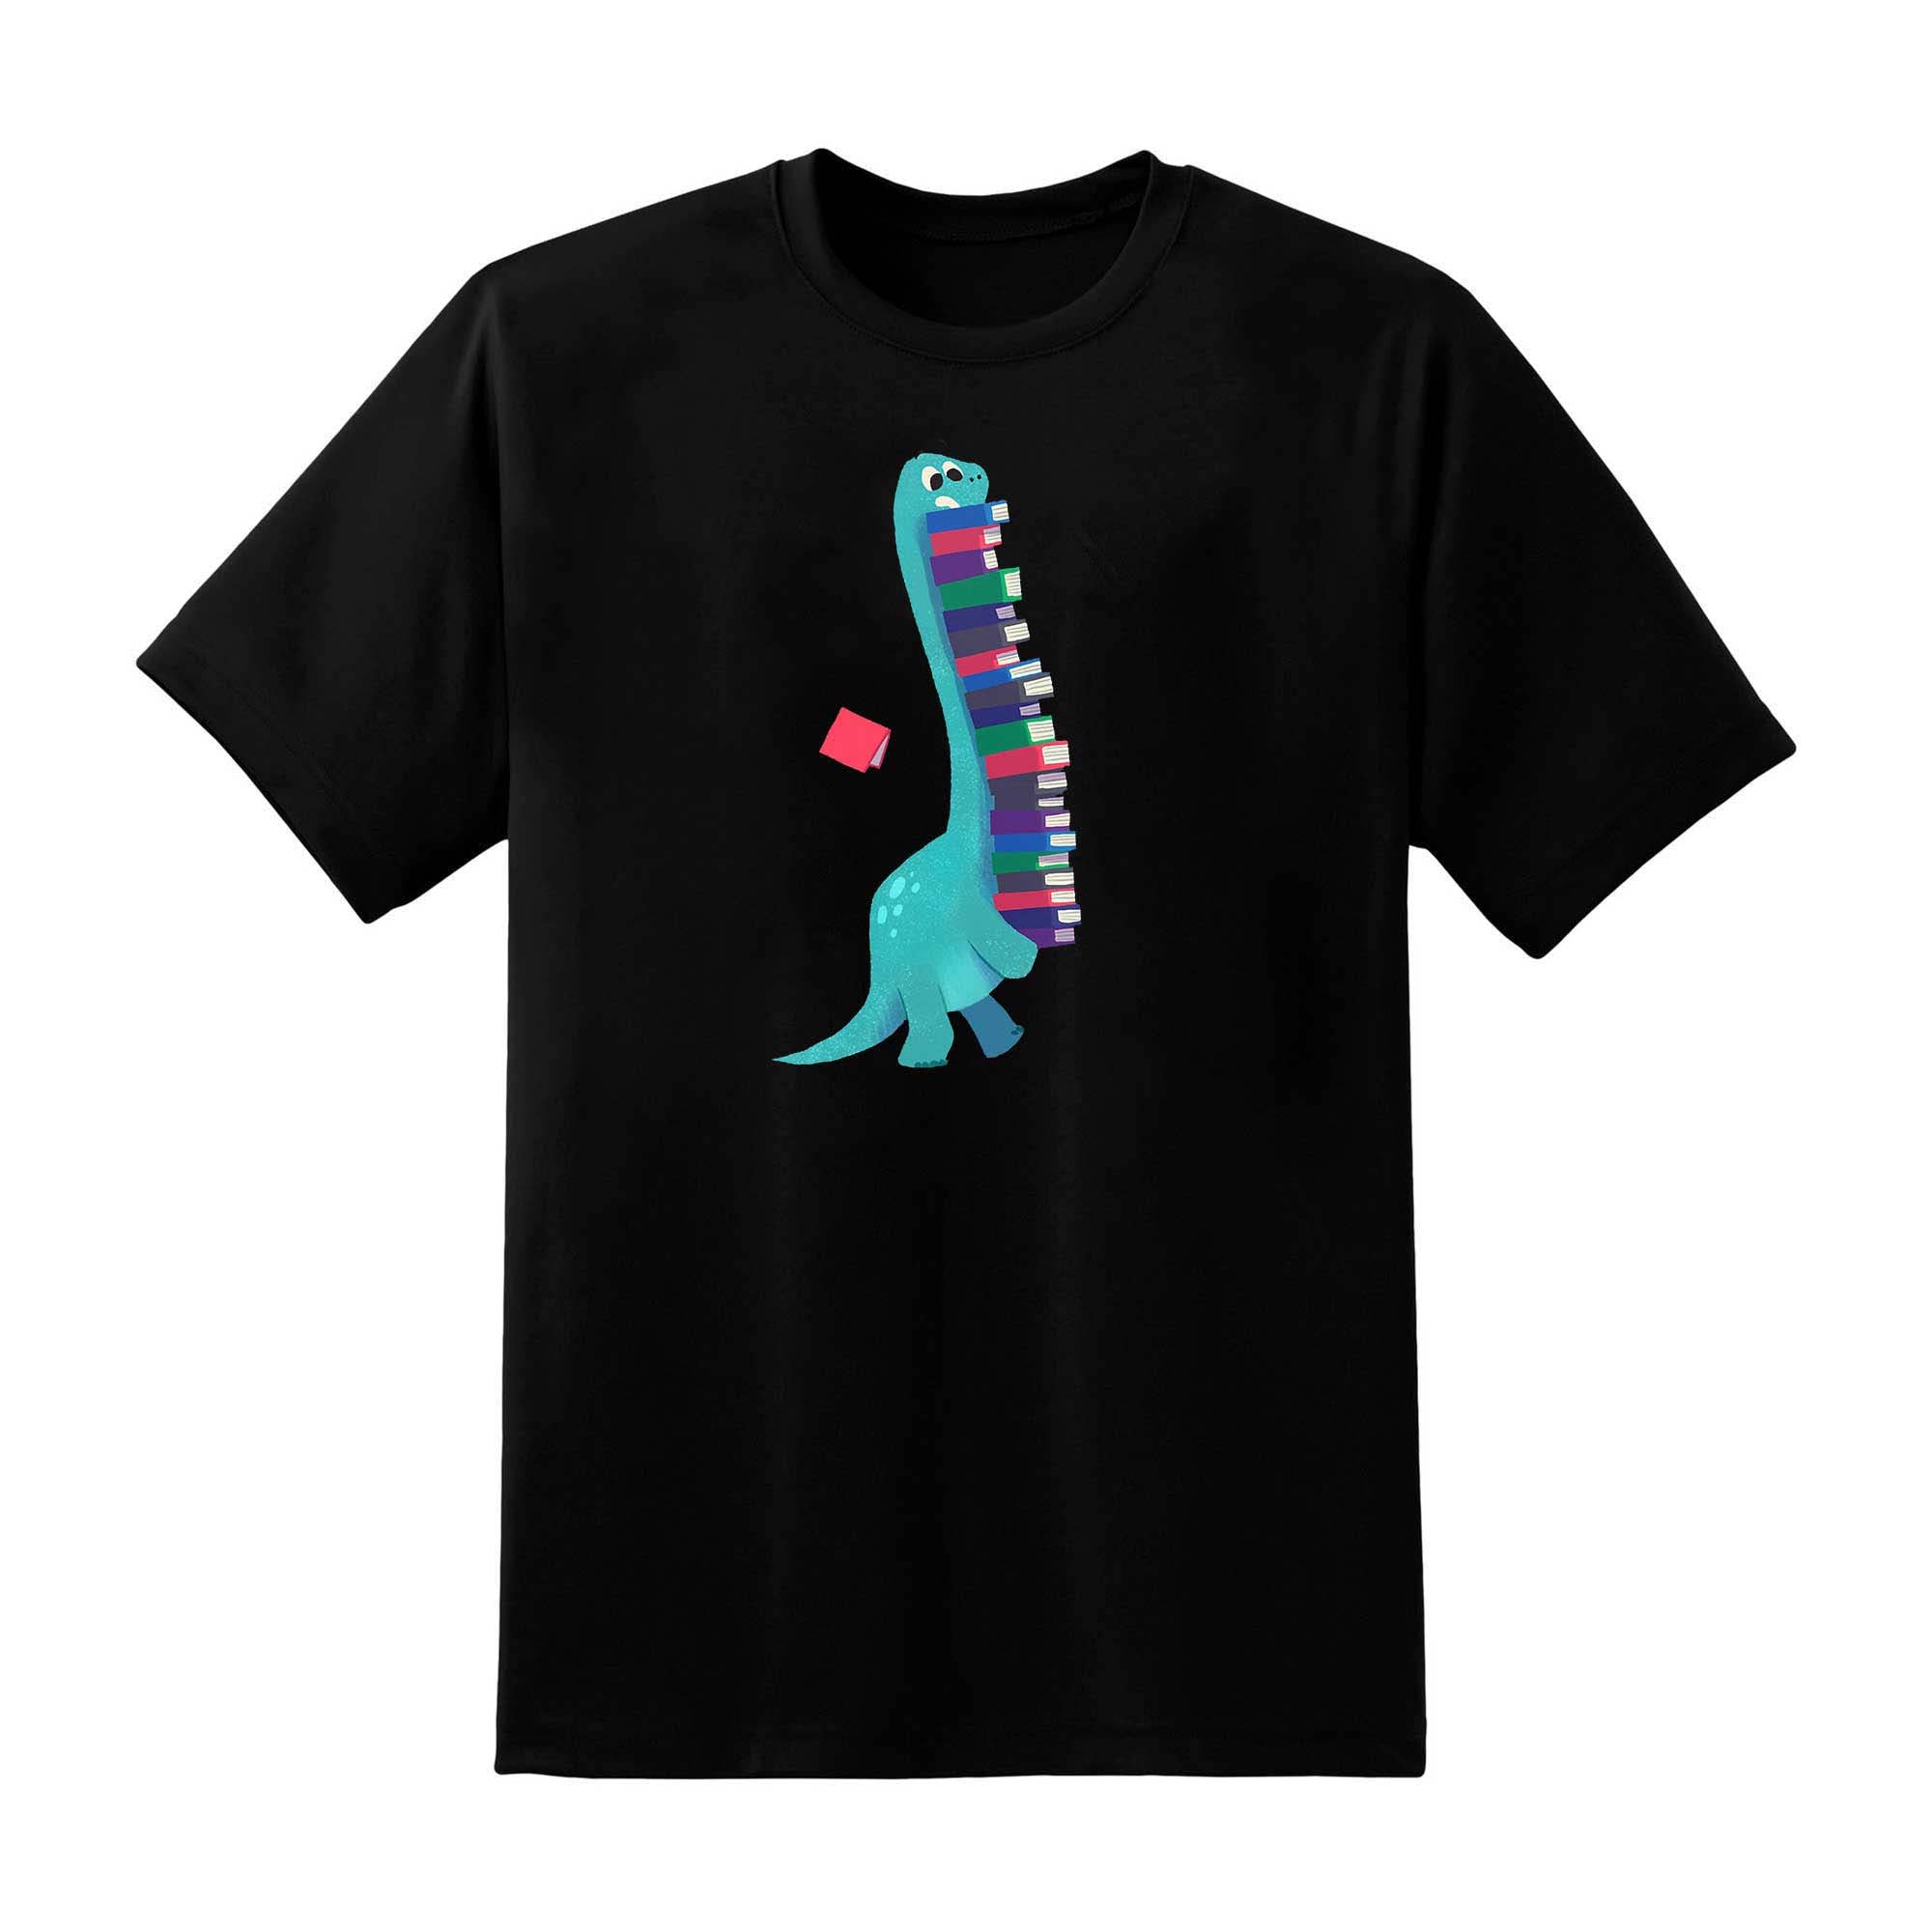 Skitongift Skitongift Book Dinosaurs Classic T Shirt Funny Shirts